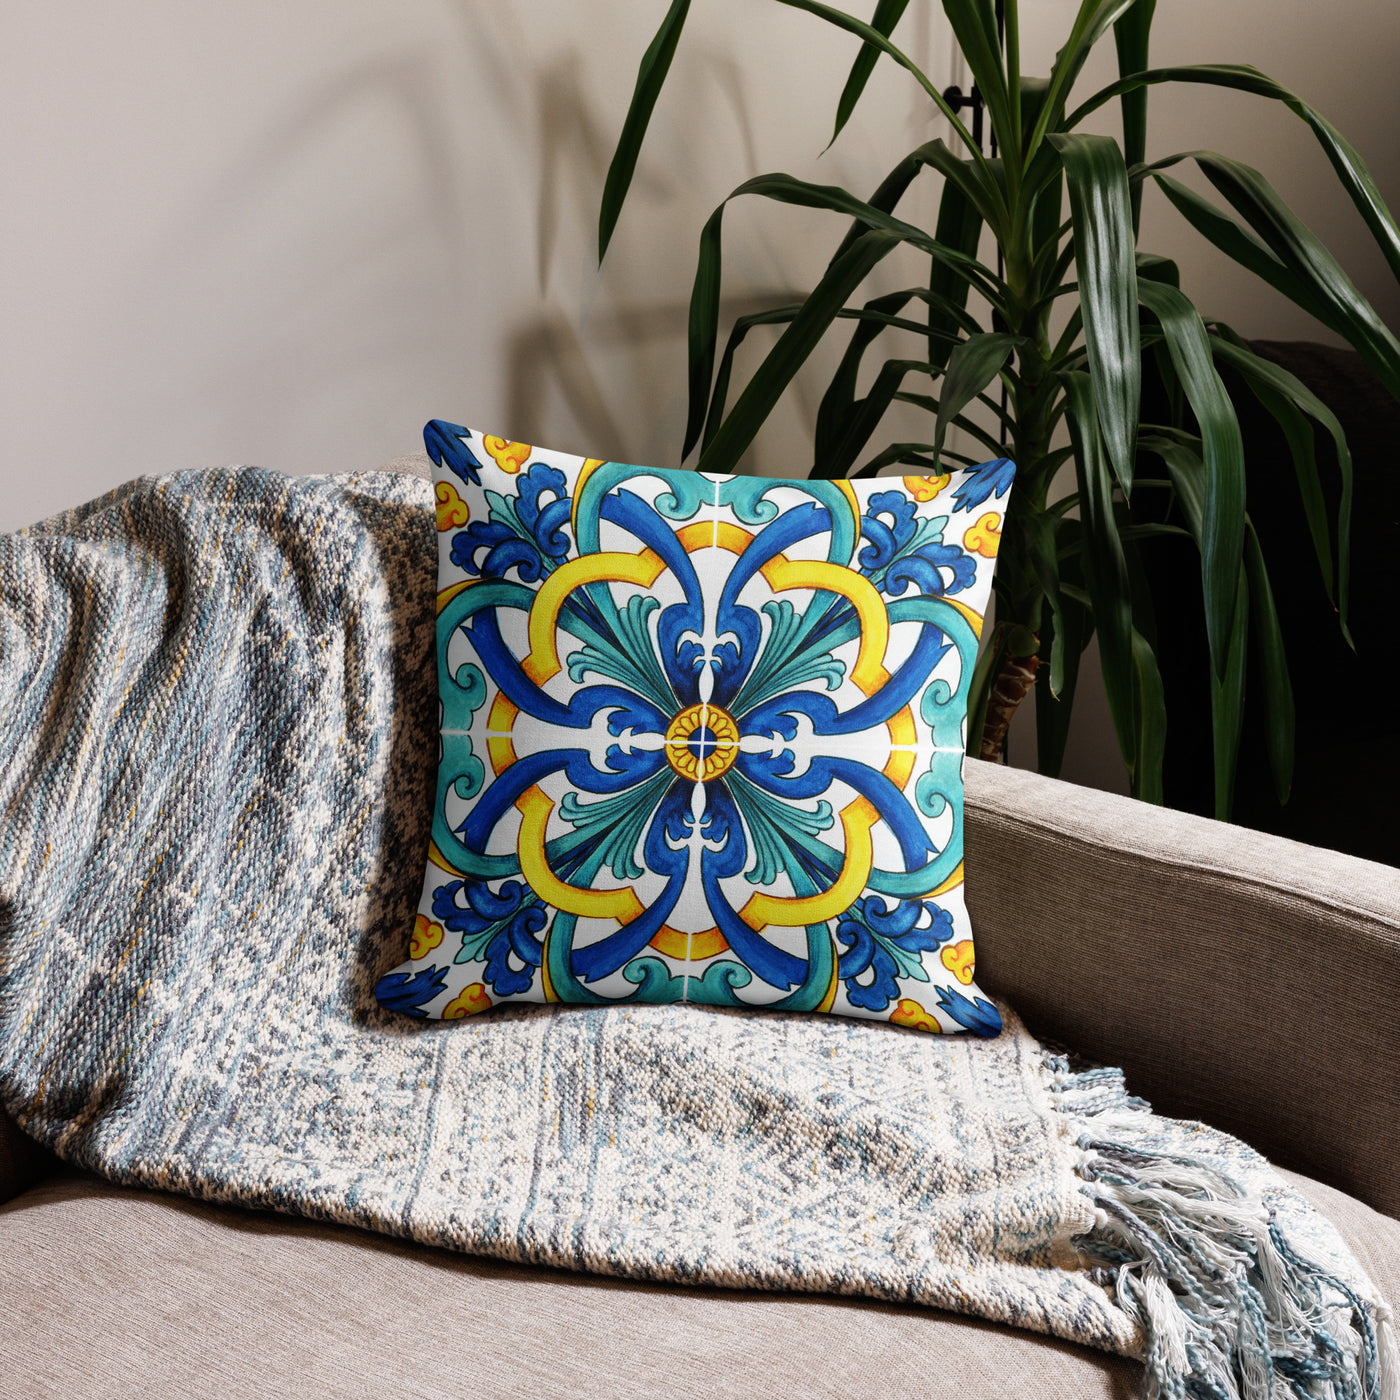 Maison James Leslie Mediterranean Blue Tile Premium Pillow Cover